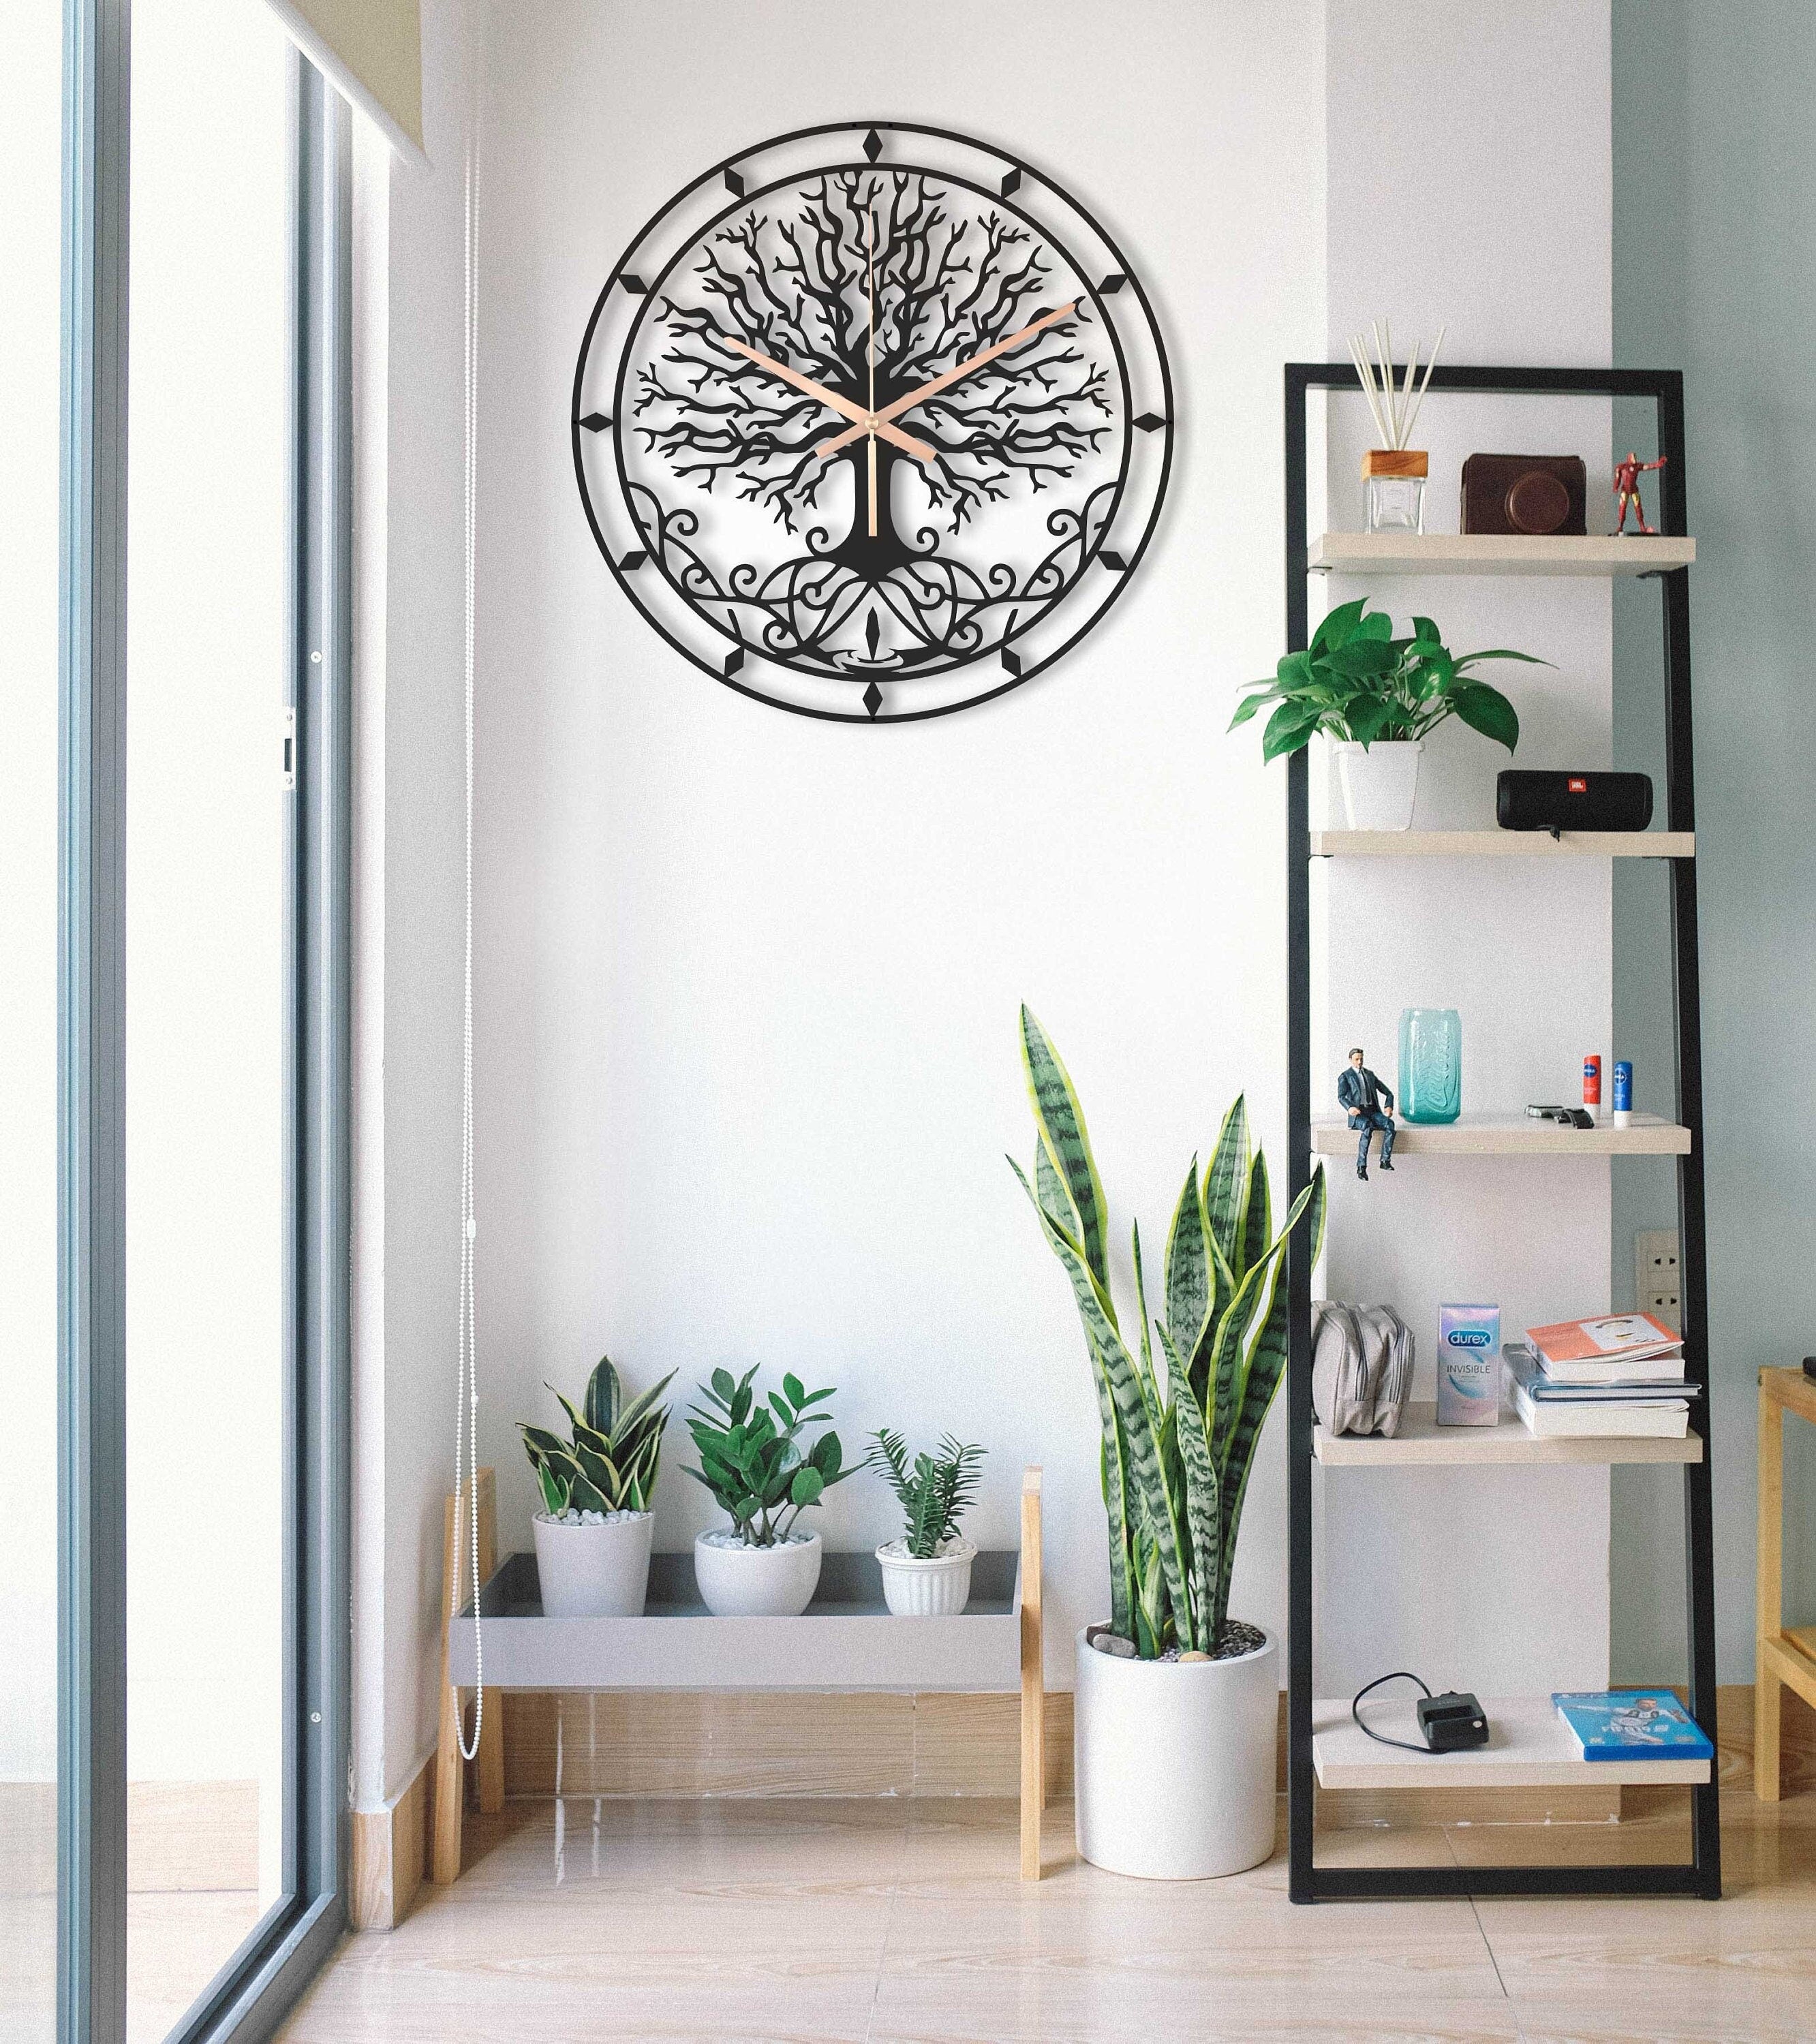 Tree Of Life Clock, Viking Tree Decorative Clock, Metal Wall Clock, Tree Large Outdoor Clocks, Silent Wall Hangings Clock, Laser Cut Clock